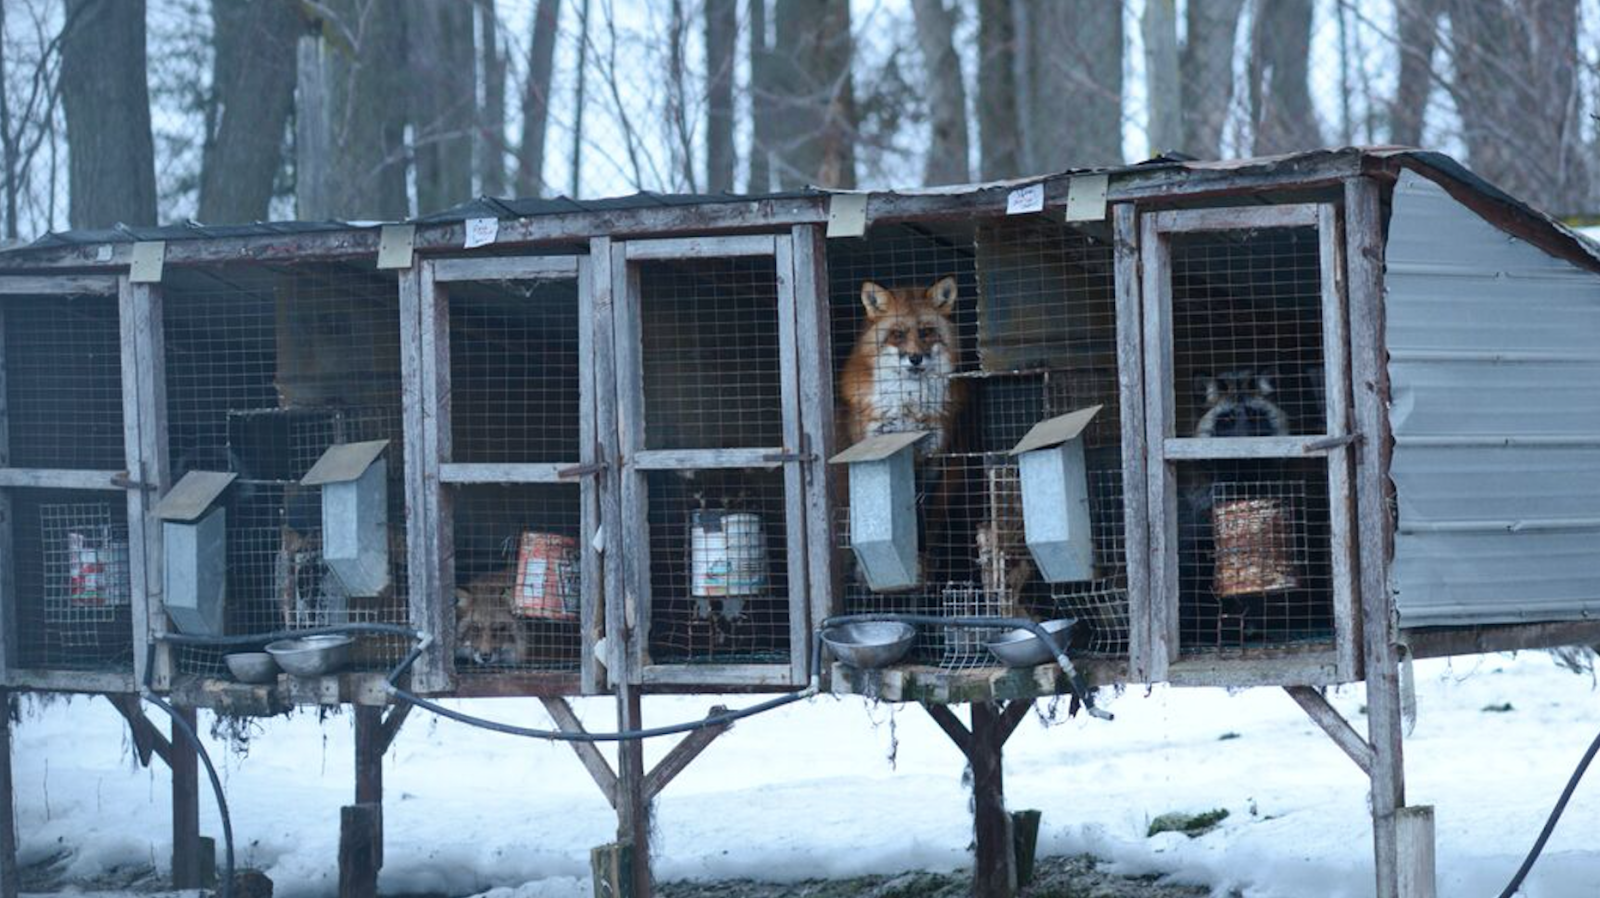 Fur-Bearers, fox farm, fox fur, mink farm, mink fur, fur industry, fur trade, animal cruelty